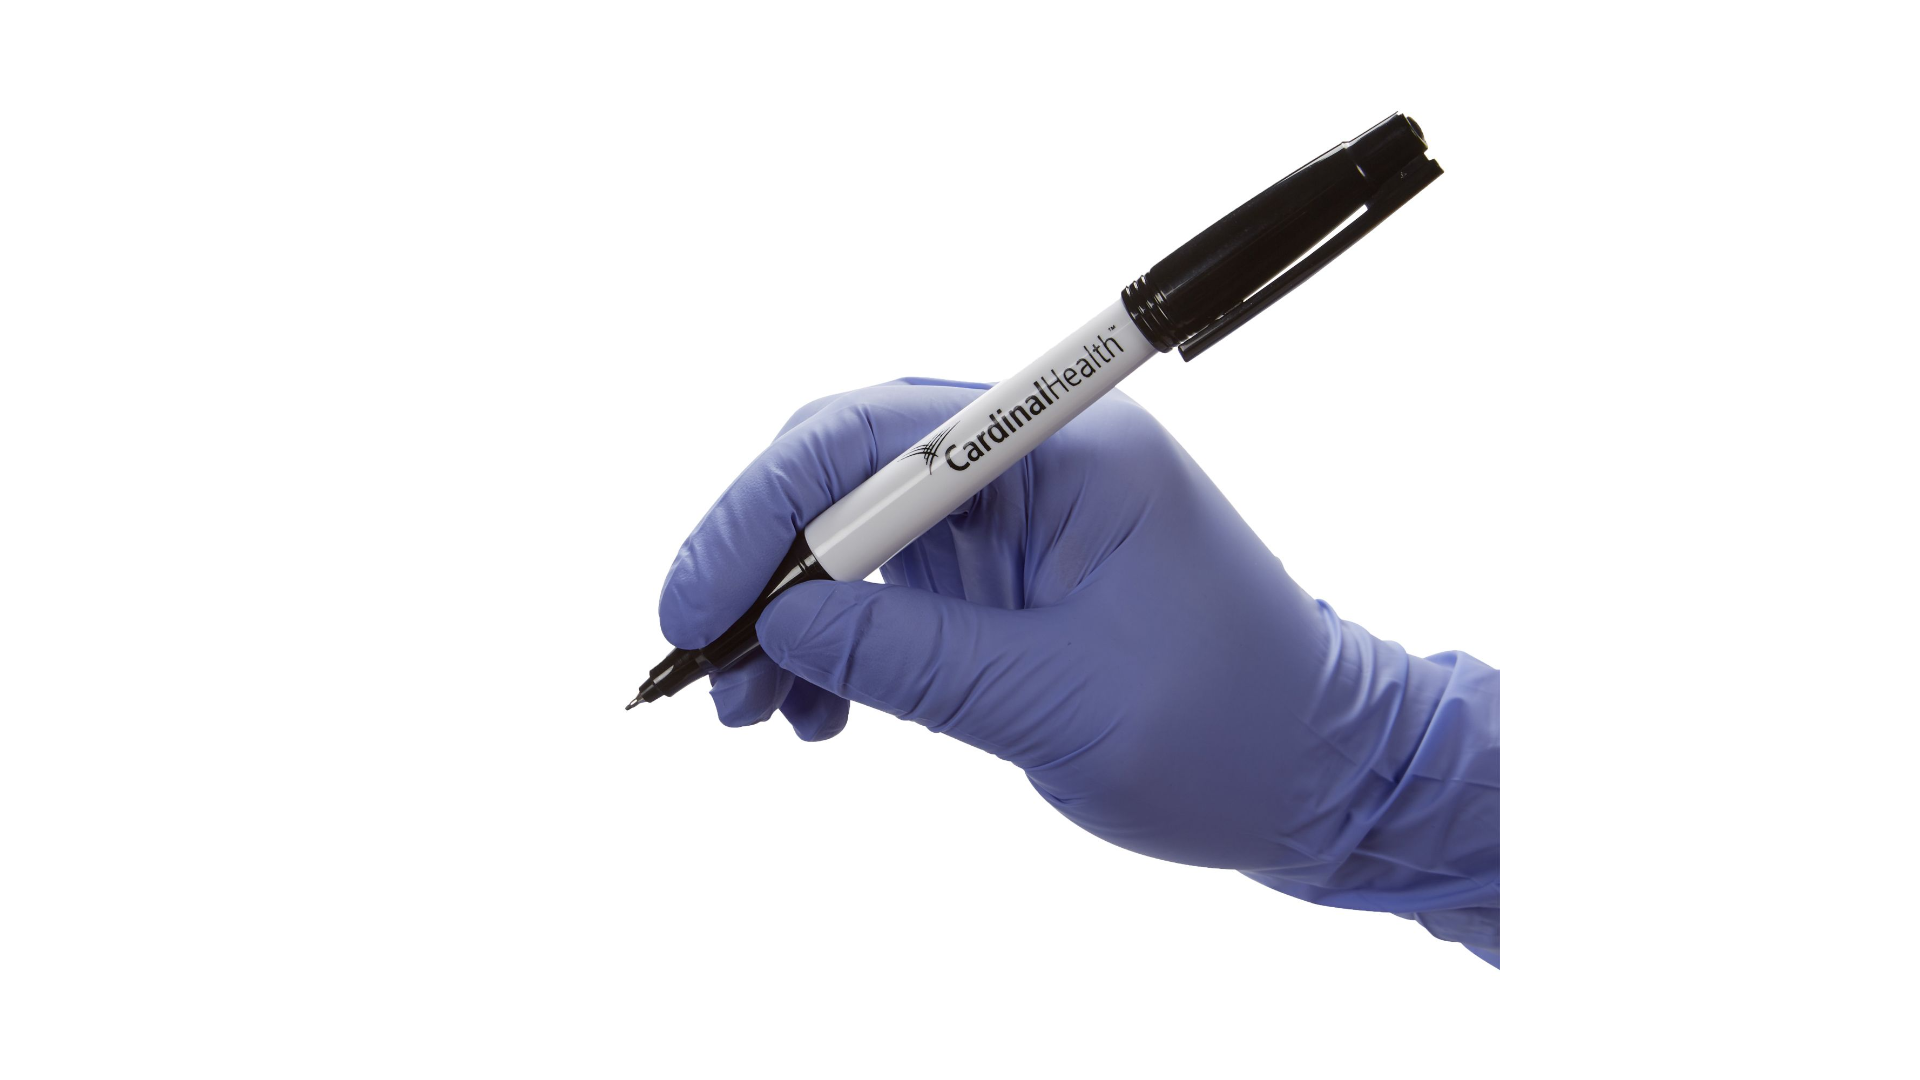 ปากกา MARK SITE สำหรับผ่าตัด Marking Pen CardinalHealth